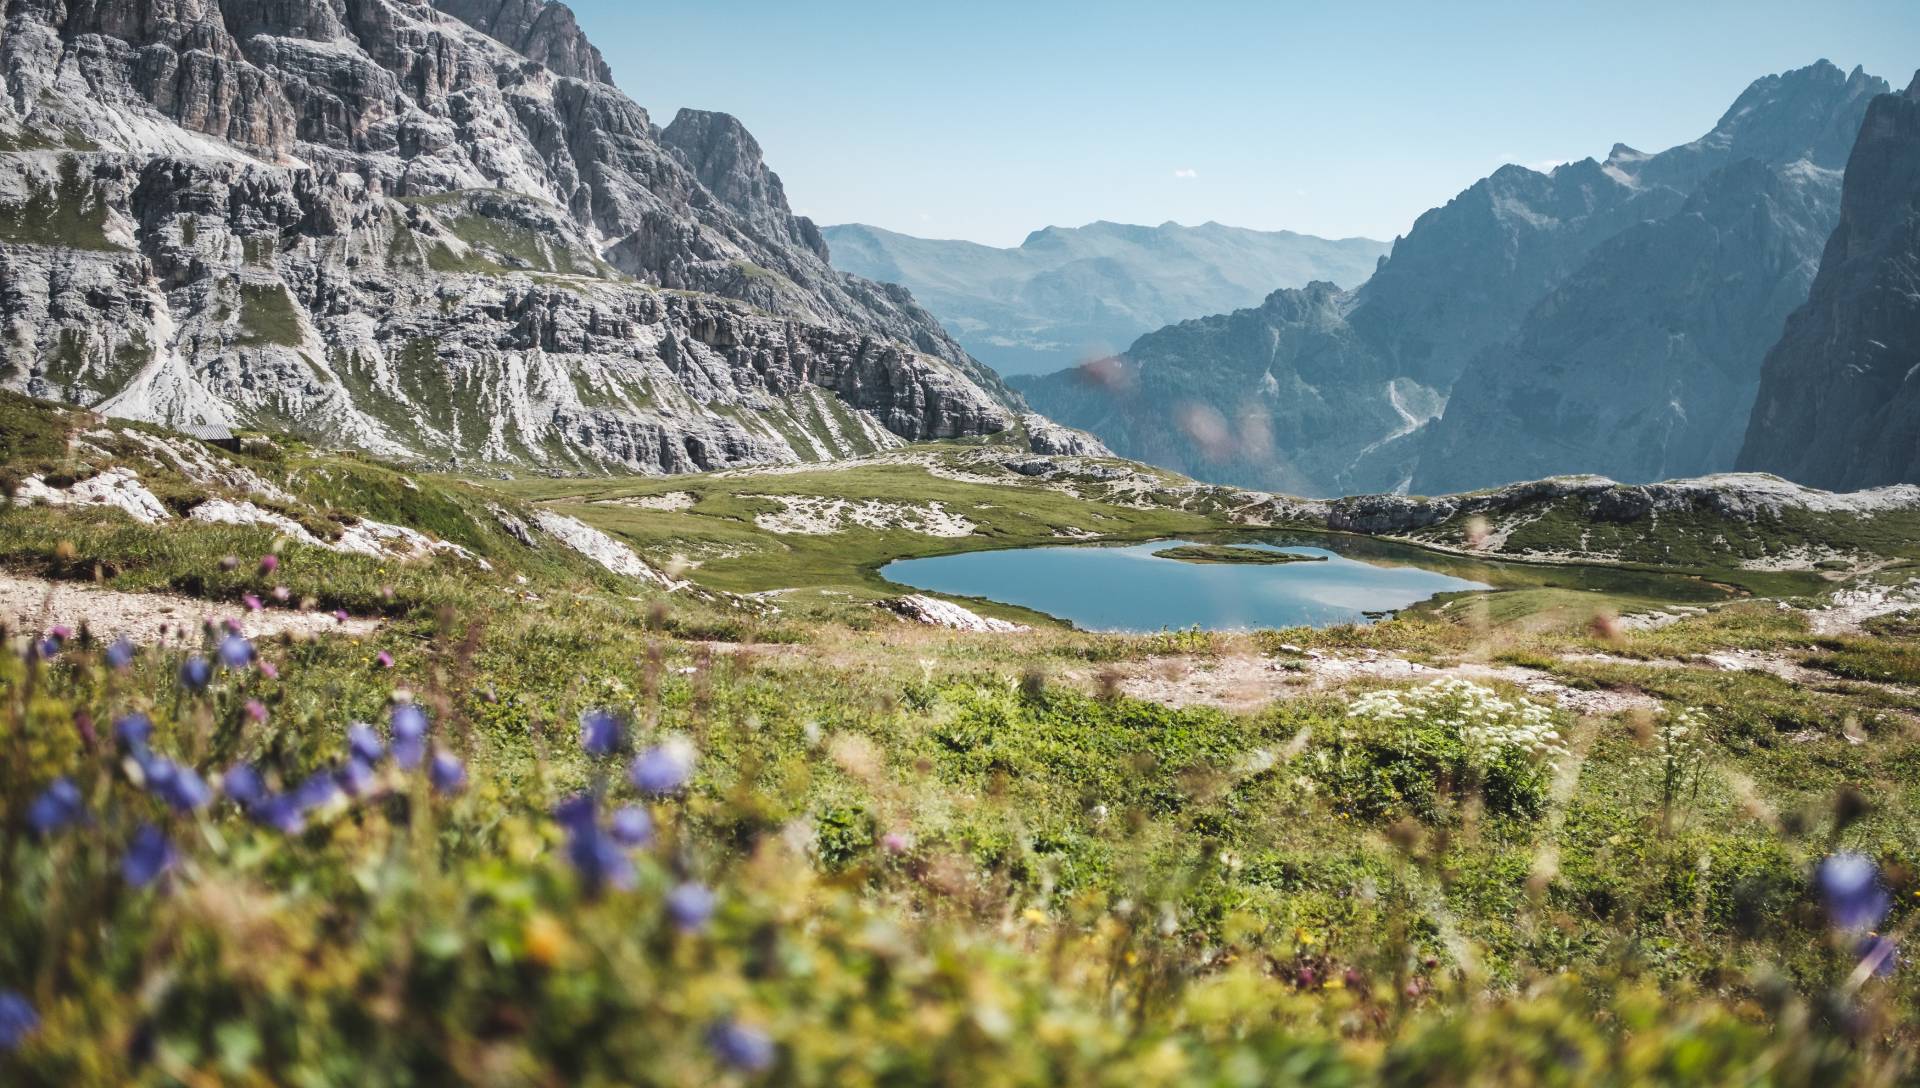 Auf dem Bild sieht man eine Alpenlandschaft, im Vordergrund mit Alpenröschen und im Hintergrund mit vielen Bergen und einem kristallblauen See